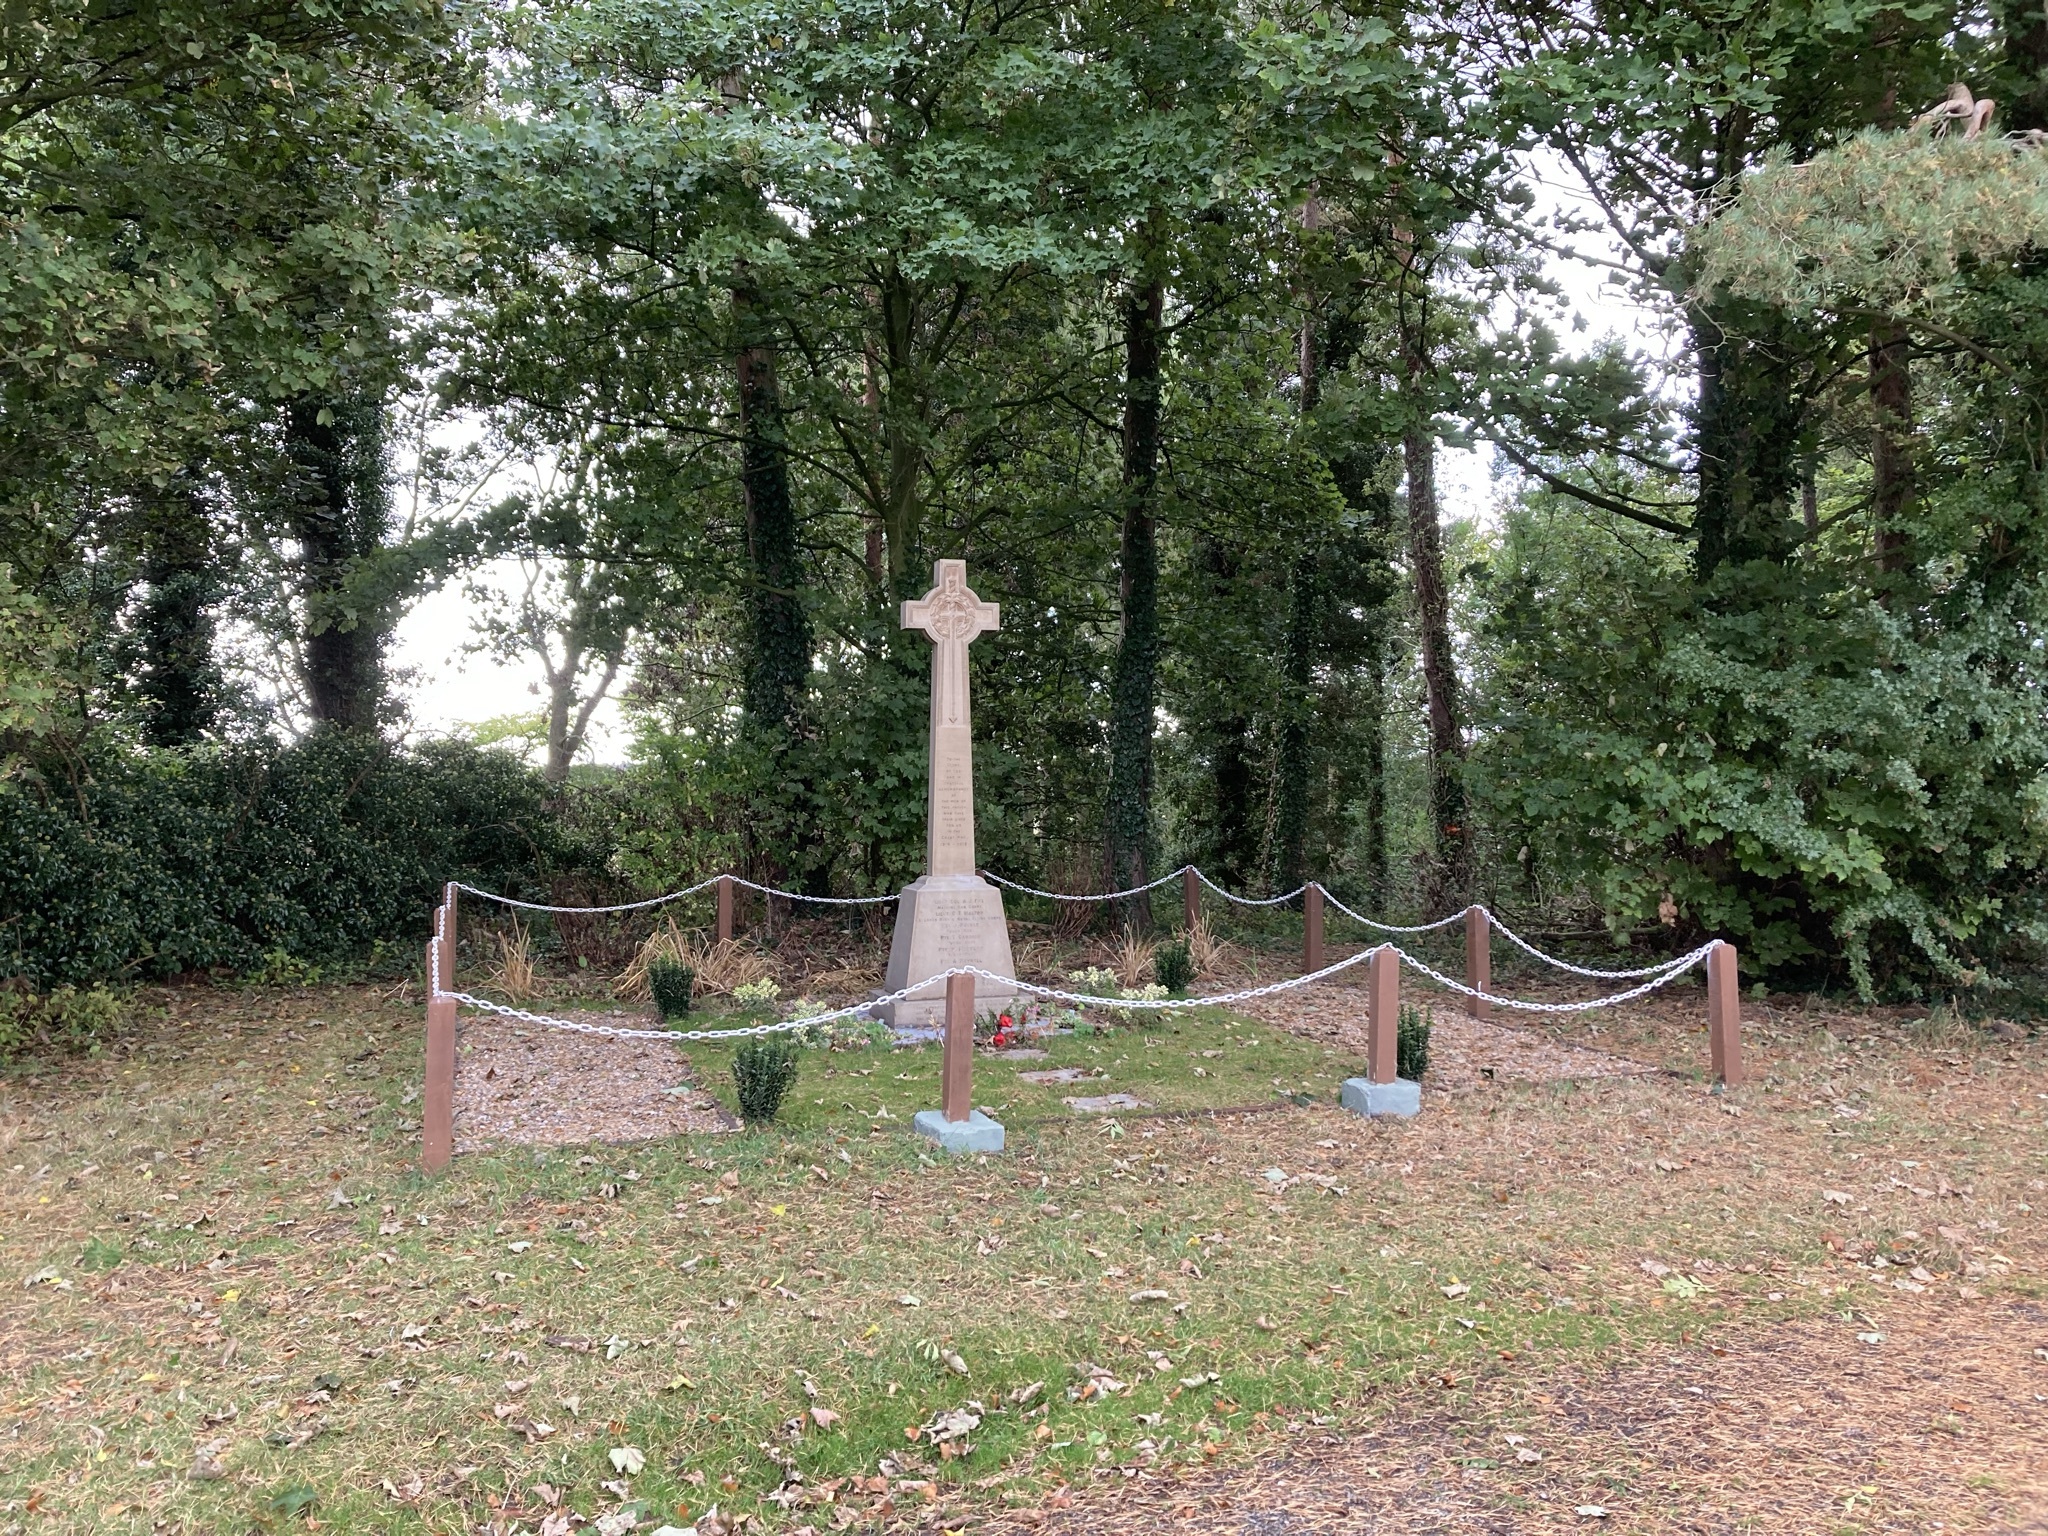 Great Langton war memorial, between Scorton and Northallerton